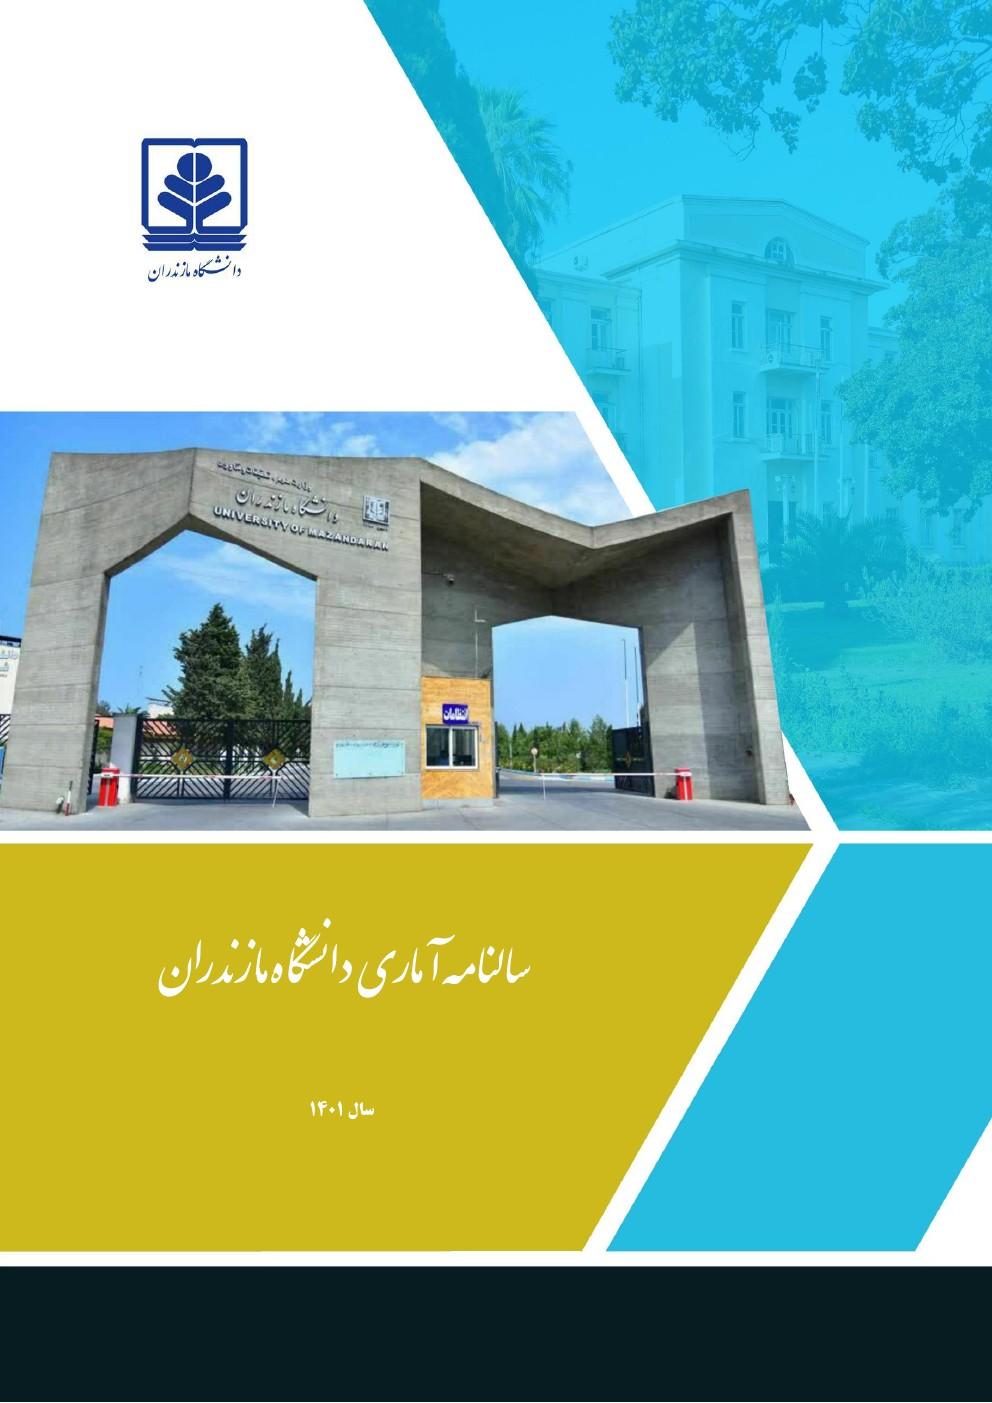 سالنامه آماری سال 1401 دانشگاه مازندران منتشر شد